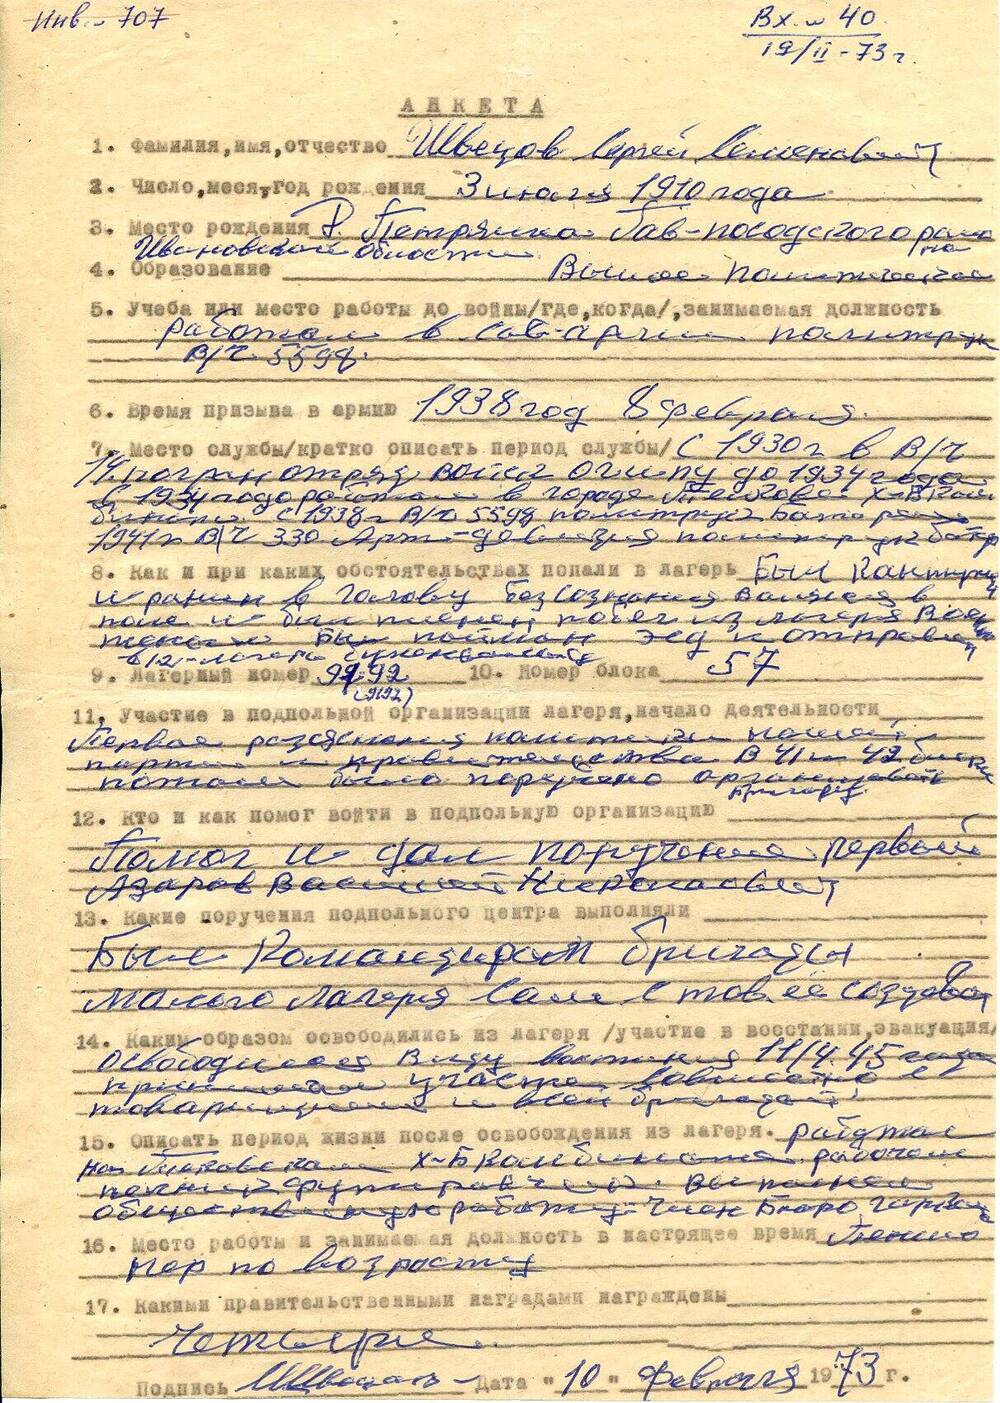 Анкета Швецова Сергея Семеновича, бывшего узника немецкого концлагеря Бухенвальд, с краткими биографическими данными.